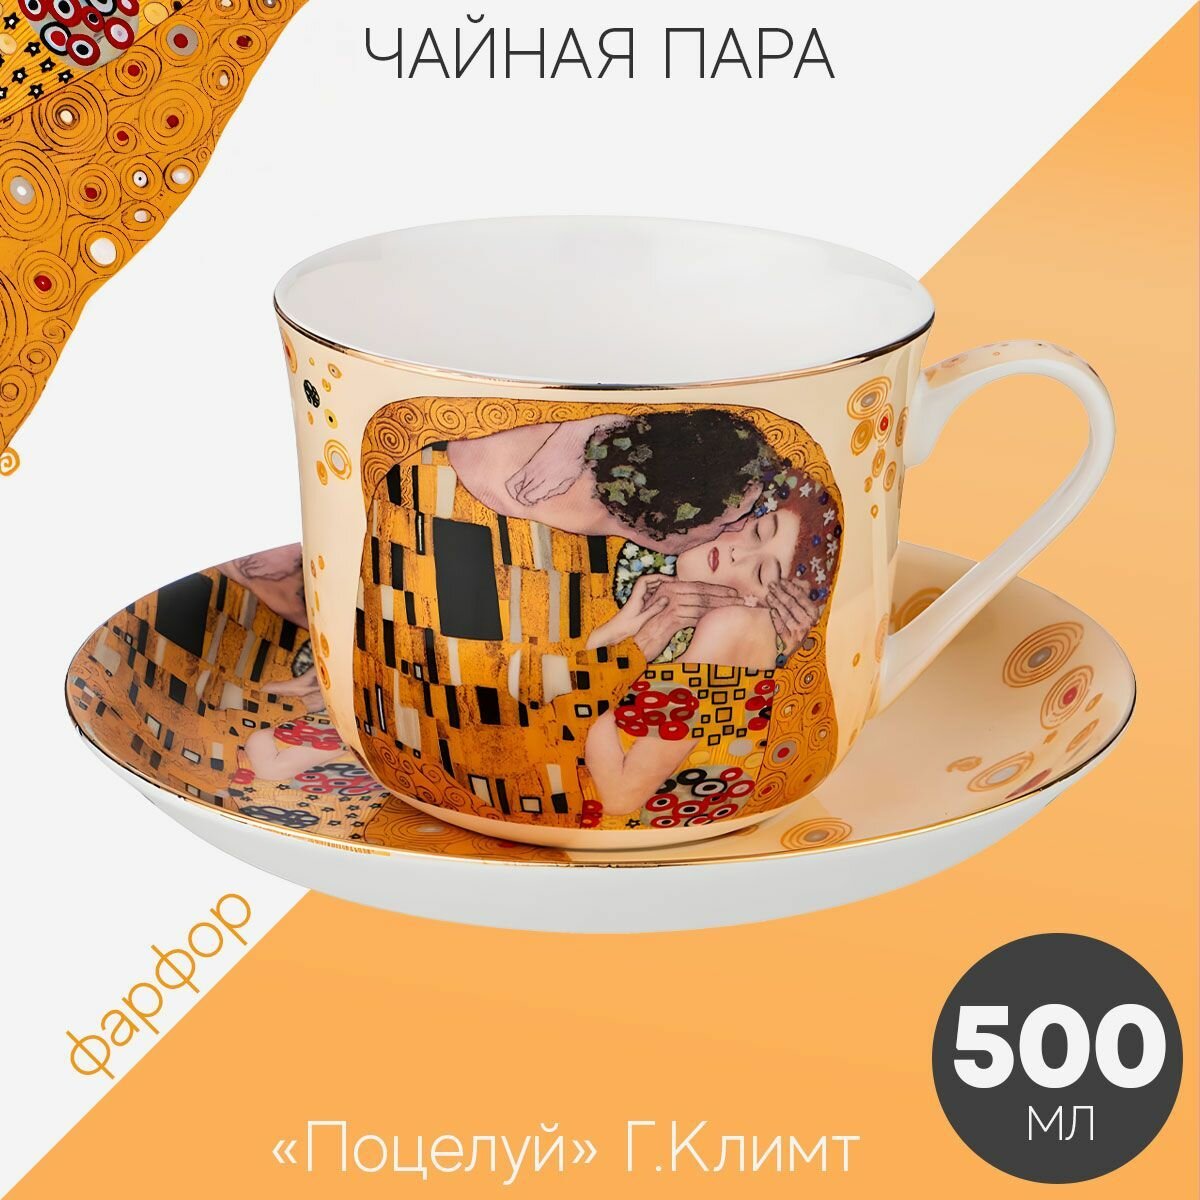 Чайная пара Лефард Поцелуй Г. Климт, набор для чаепития на 1 персону: чашка 500 мл, блюдце из фарфора, Lefard подарочная